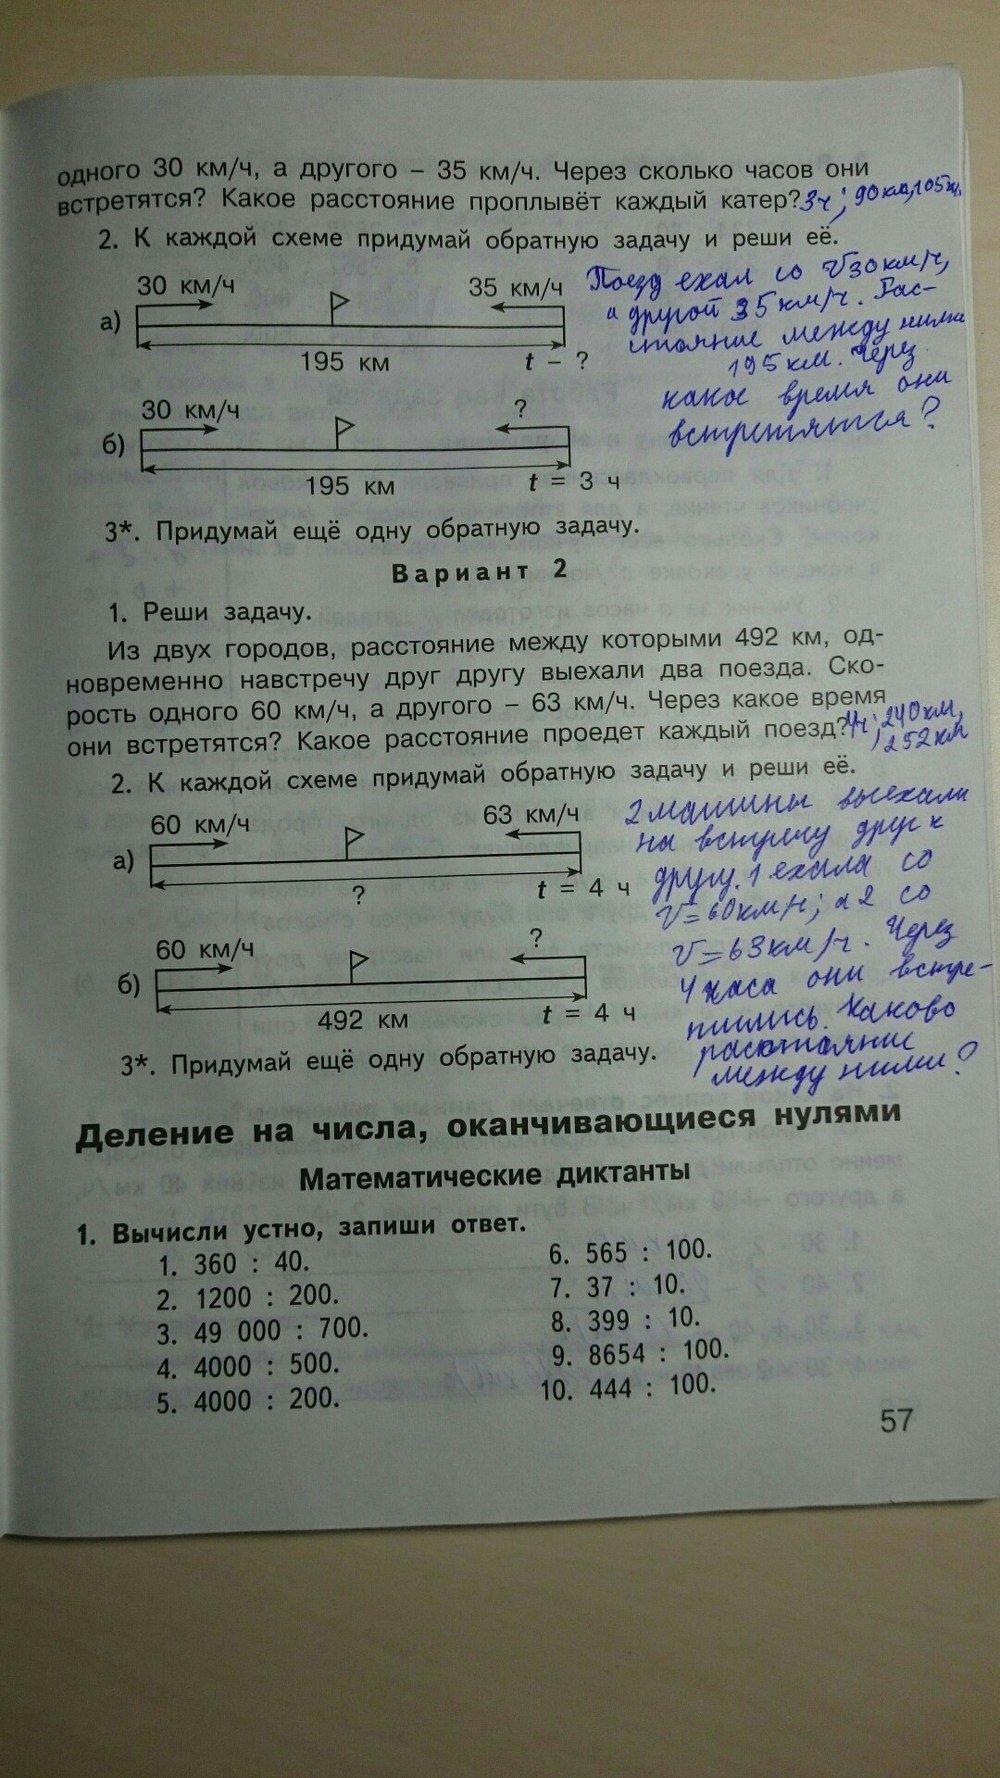 гдз 4 класс контрольно-измерительные материалы страница 57 математика Ситникова